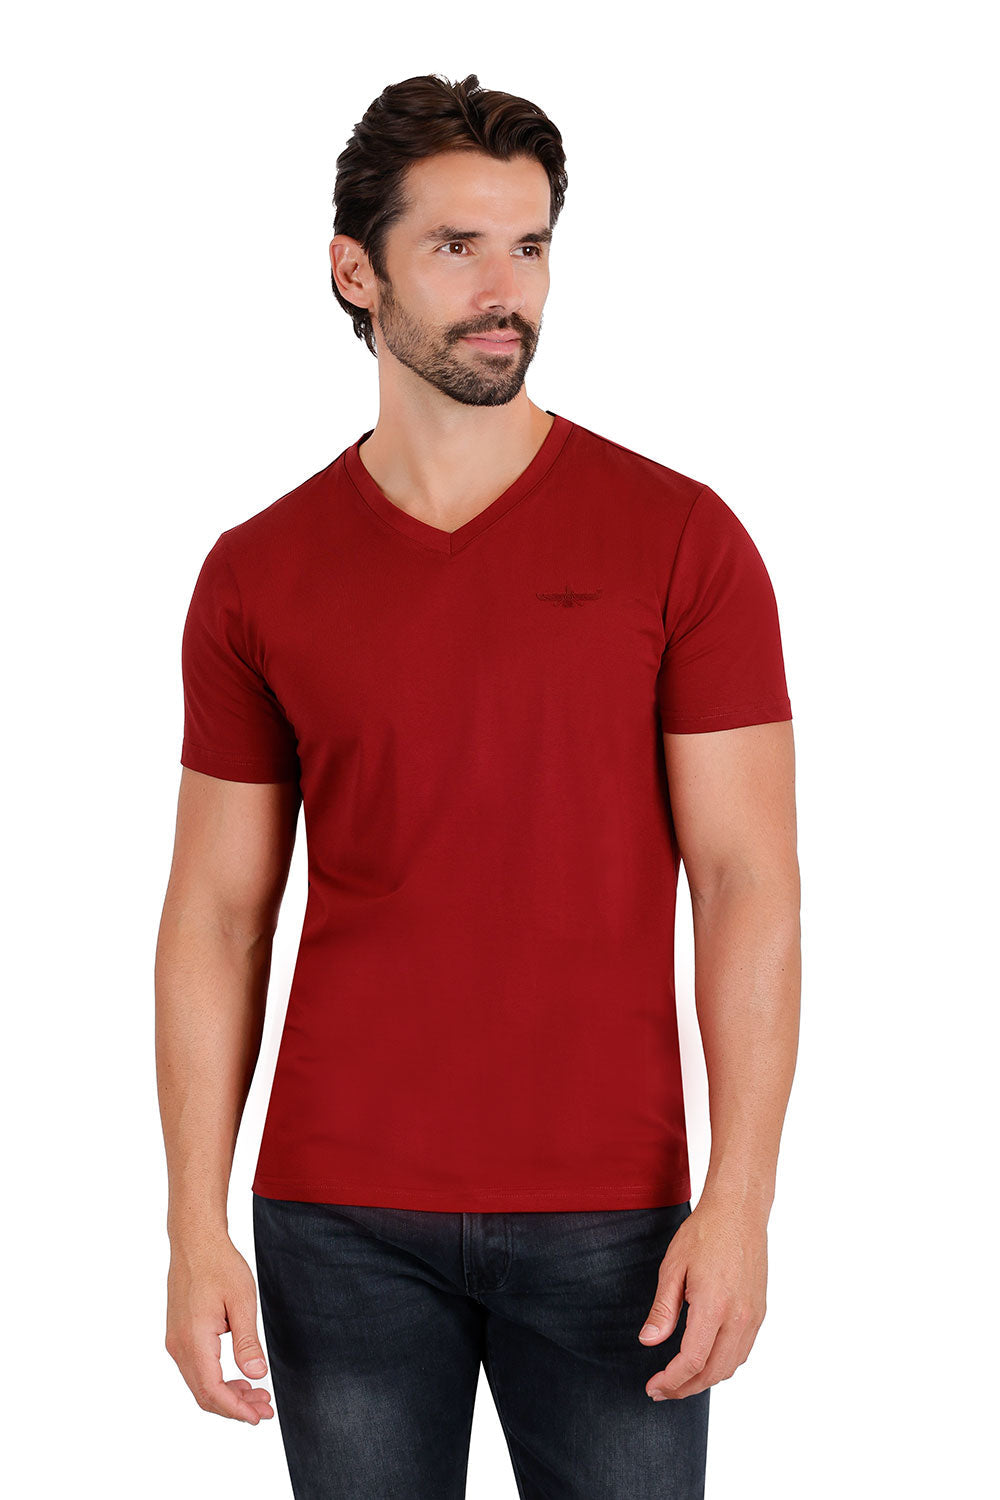 BARABAS Men's Basic Solid Color Premium V-neck T-shirts TV216  Wine 